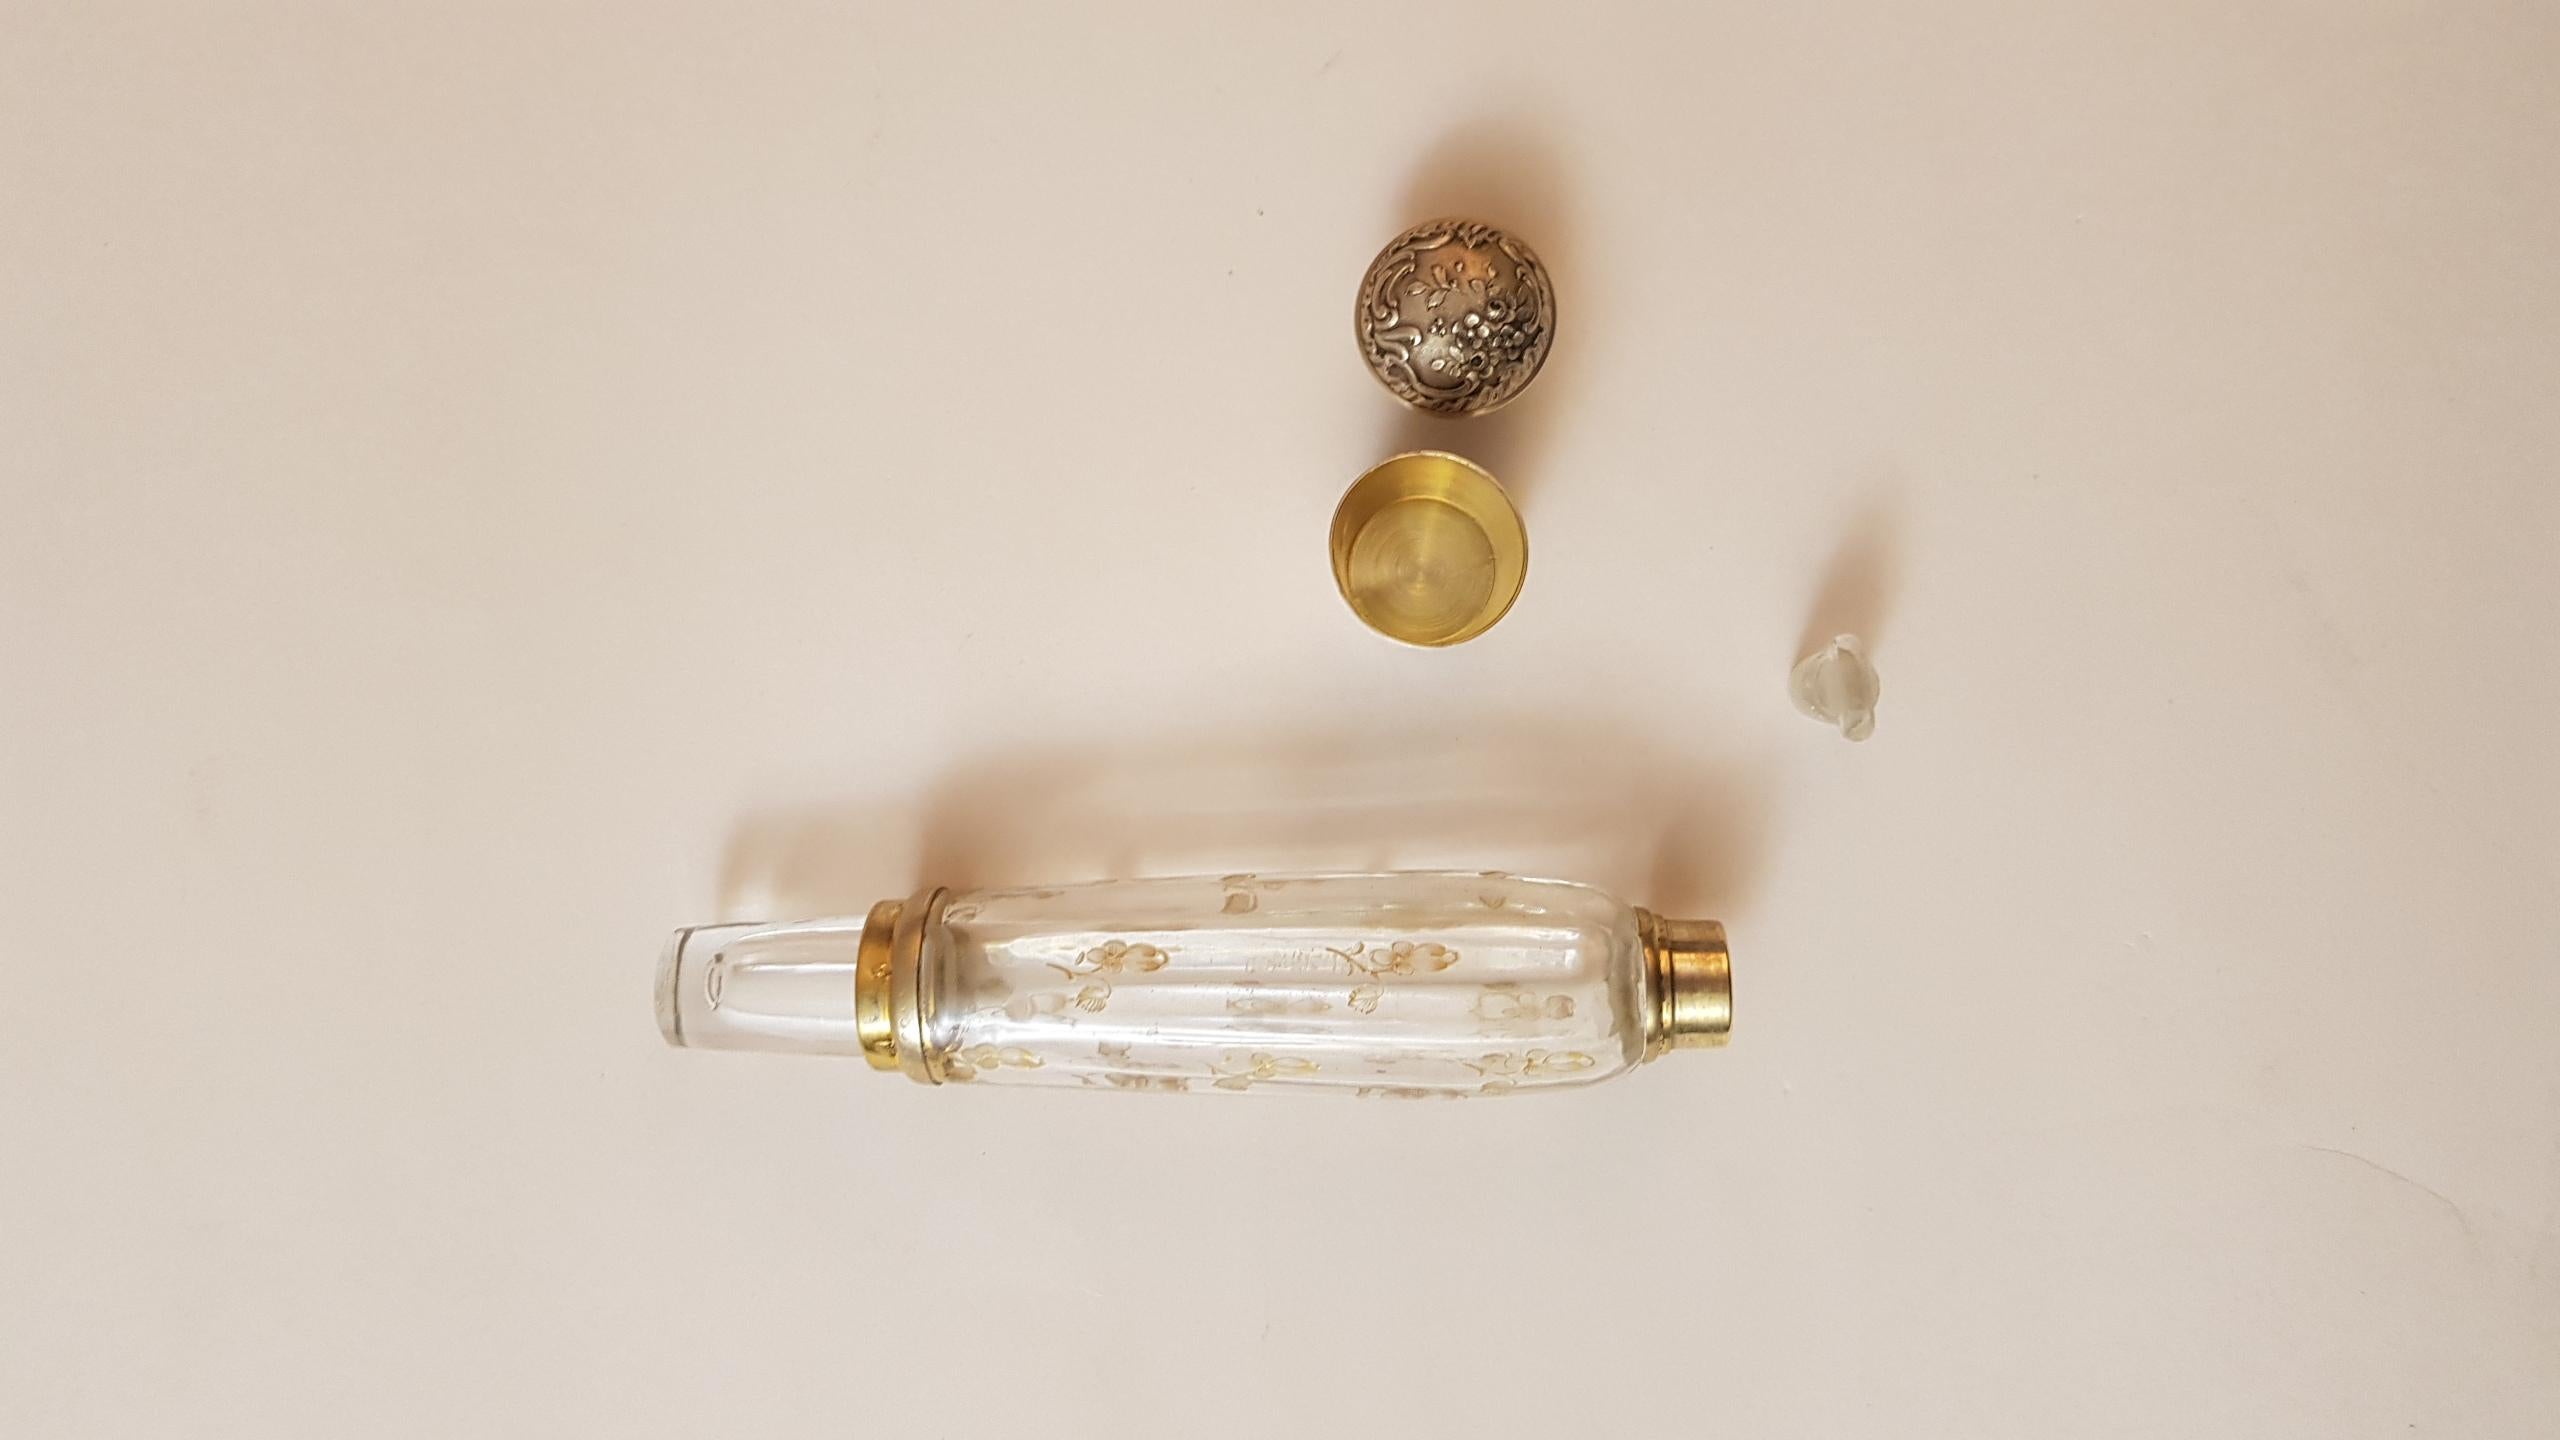 Daum Art Nouveau France Glass Silver Liquor Holder, 1890 For Sale 1